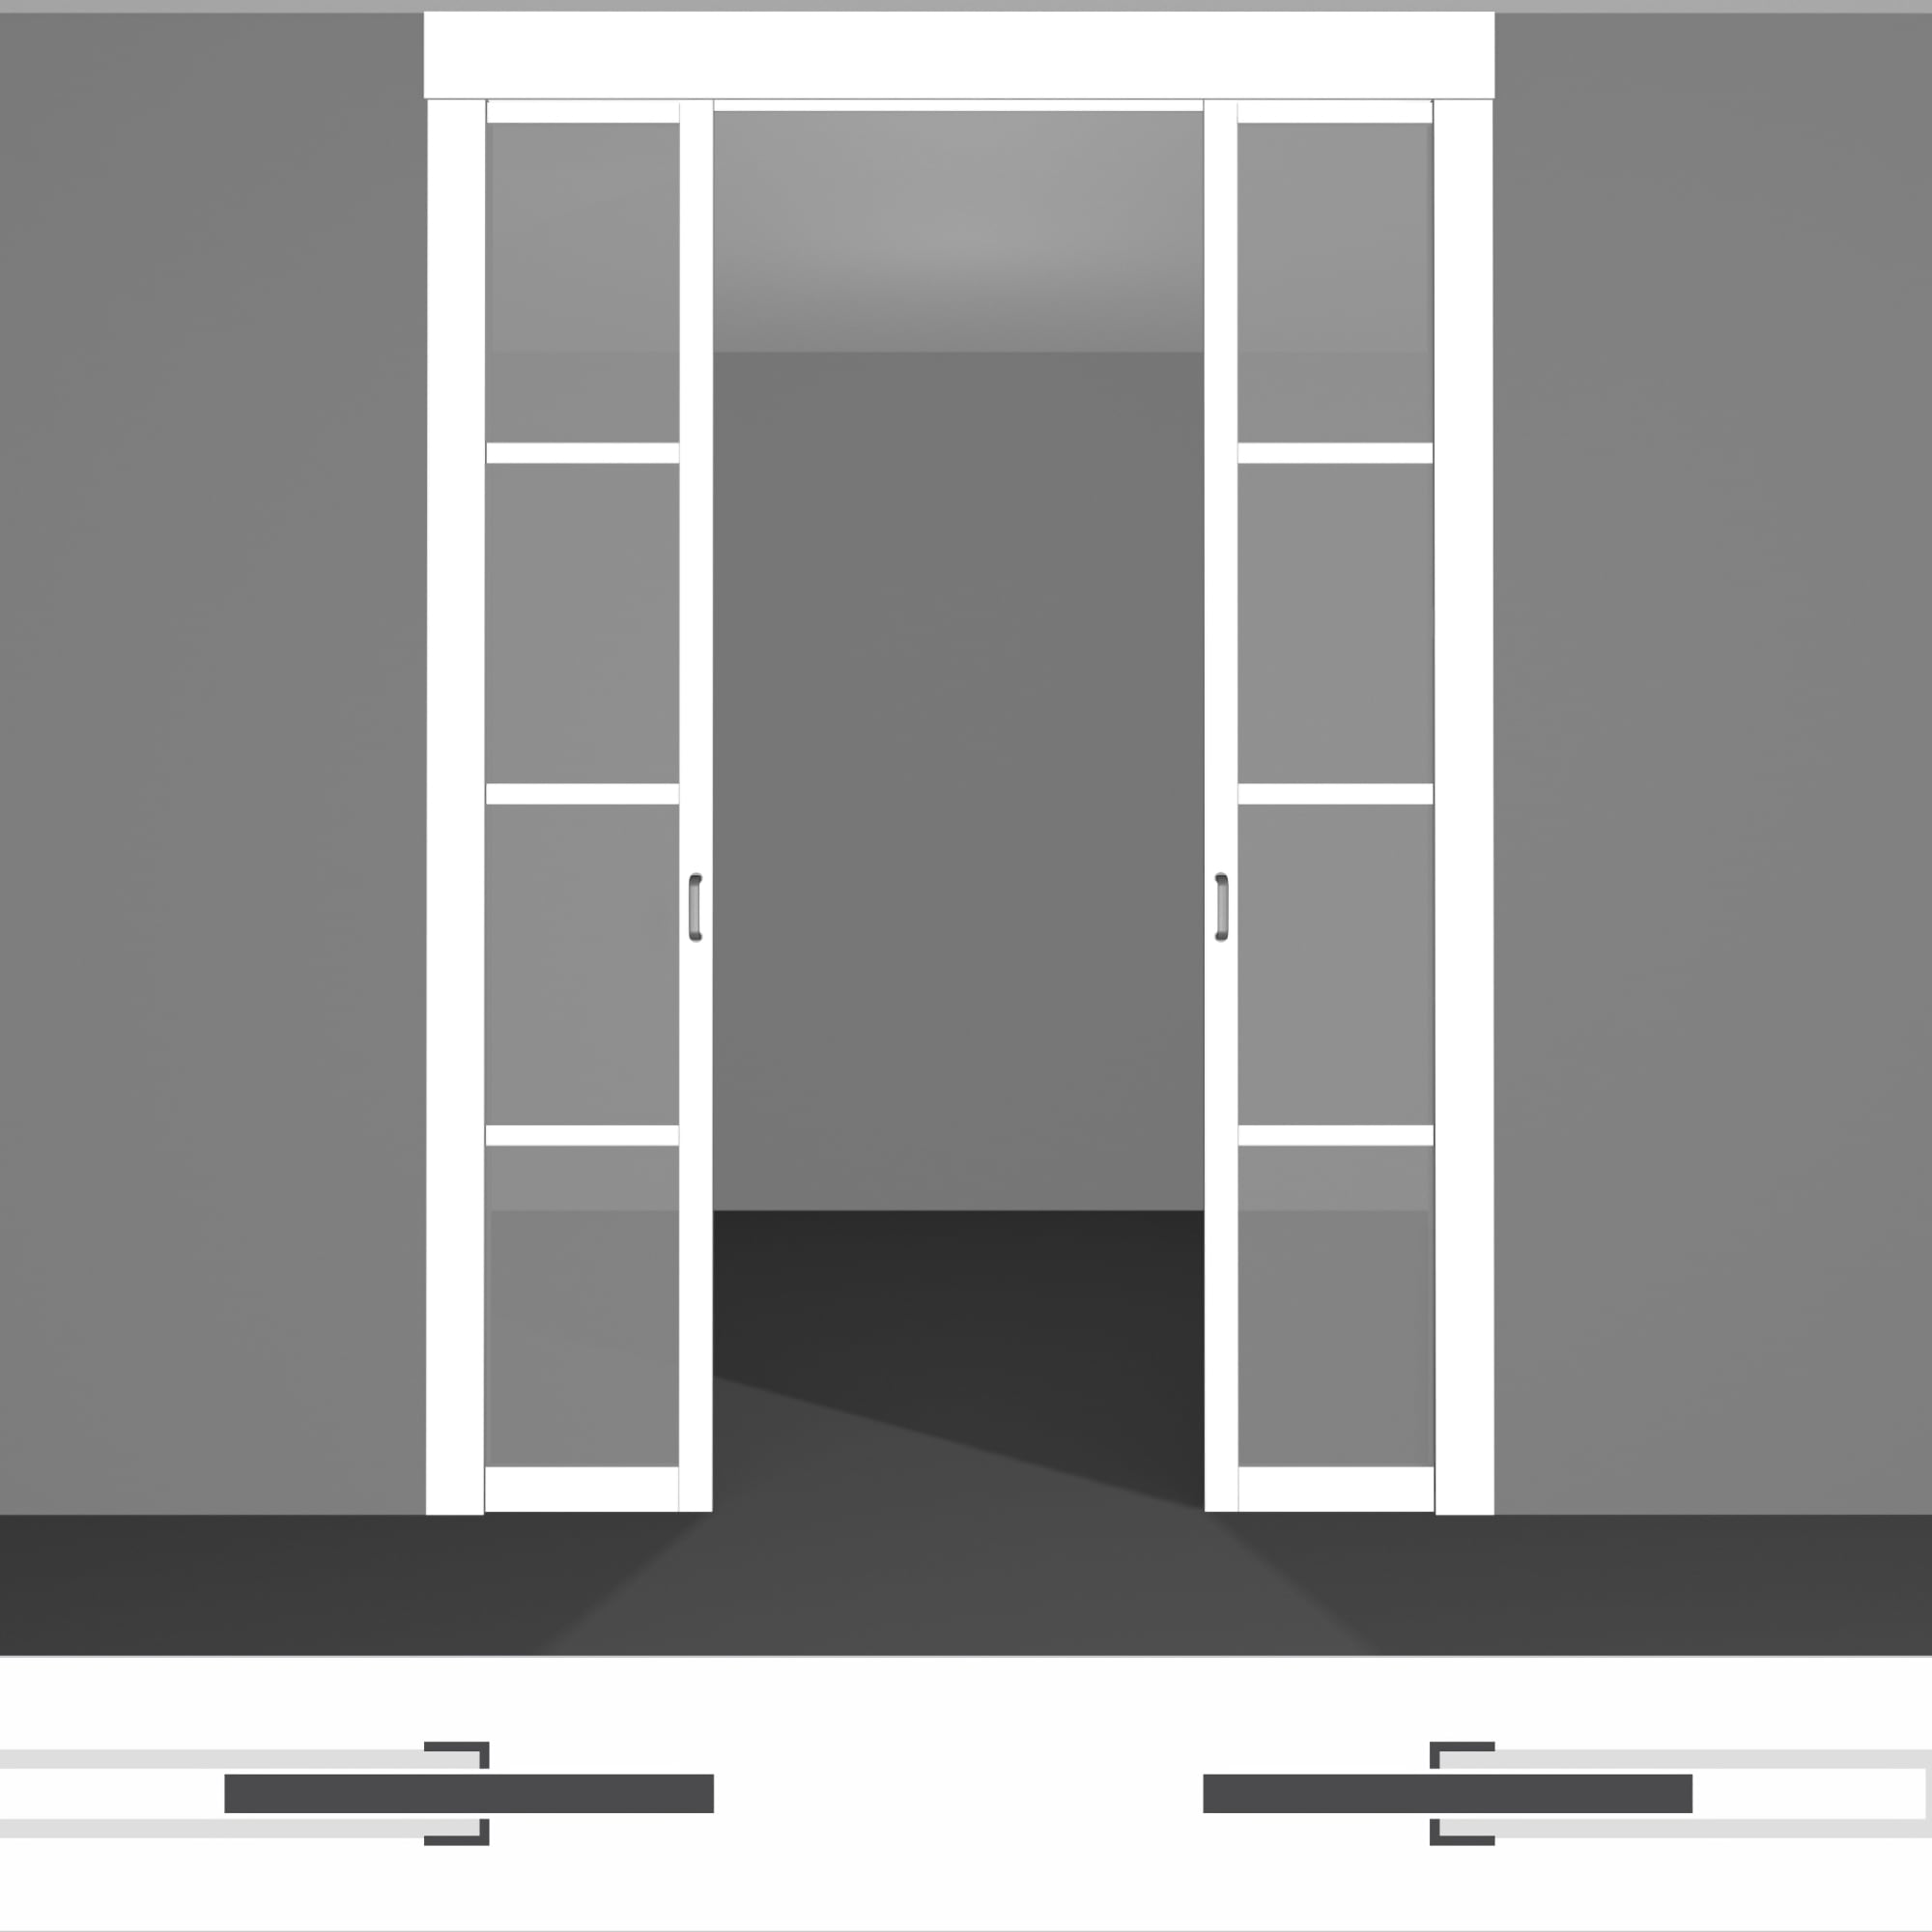 Раздвижные двери в стену P01.2 двойной комплект • высота до 2430 мм • светлые полотна внутрь стены